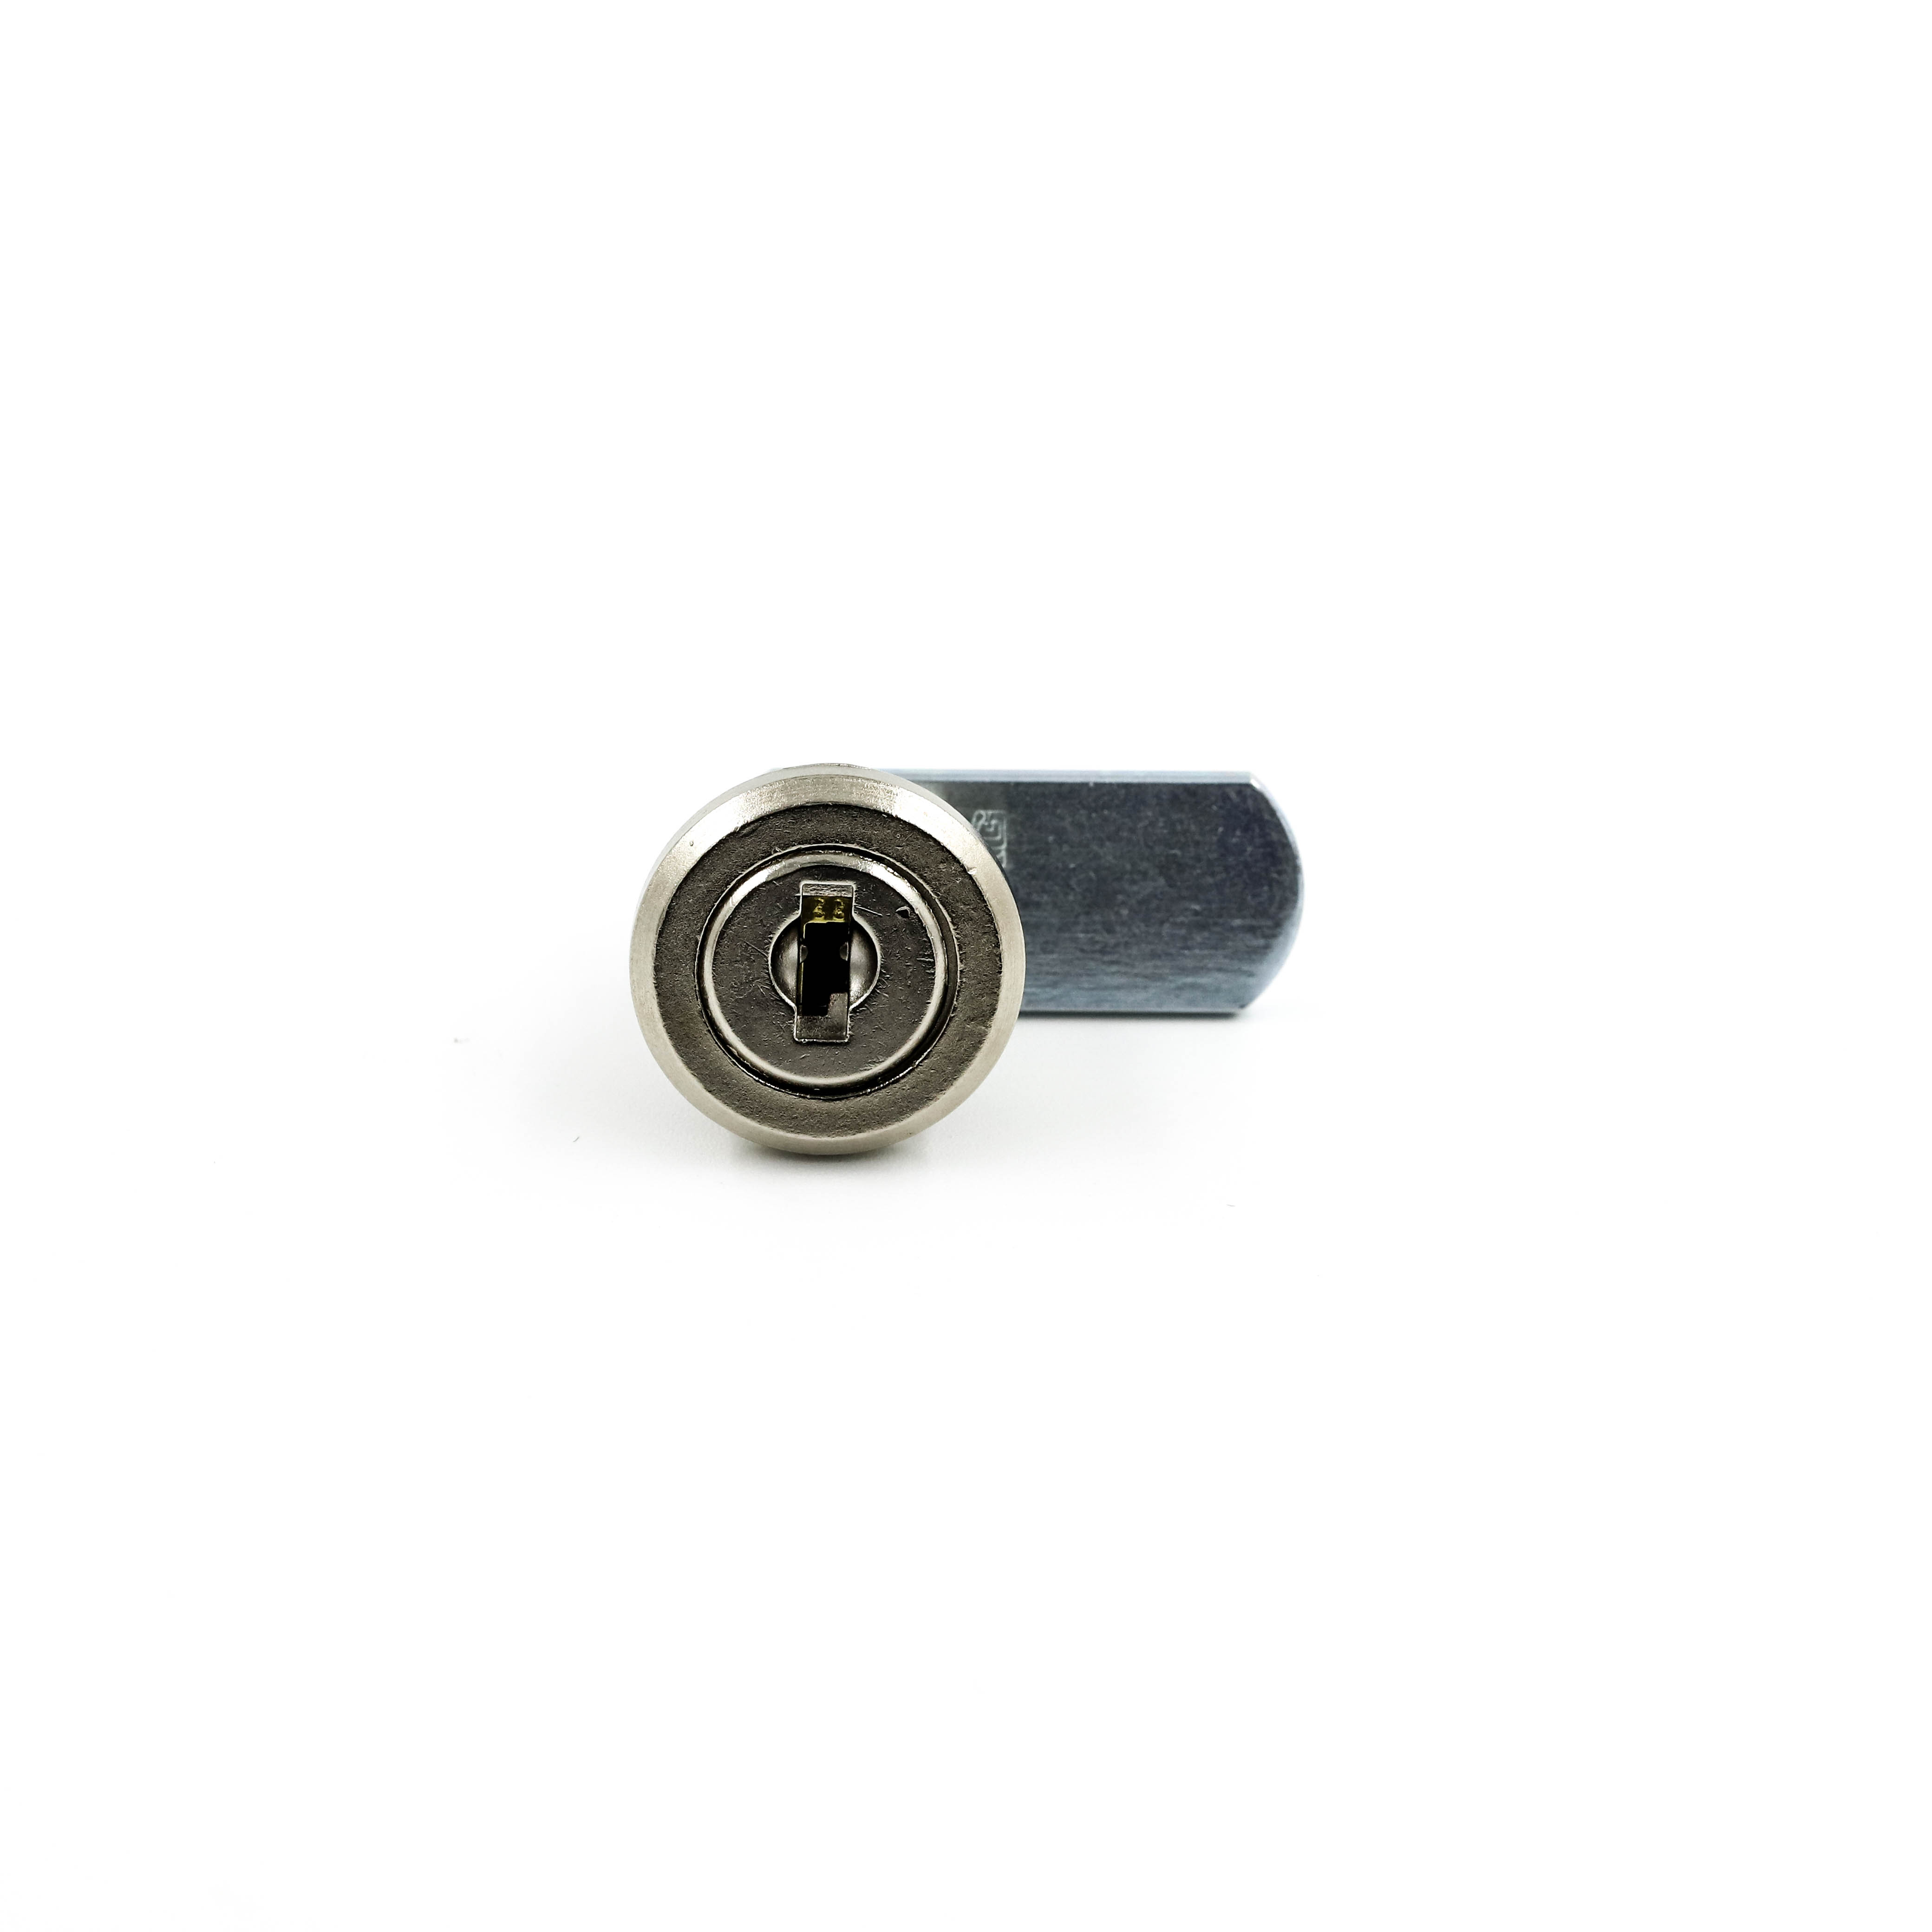 Cam lock set 11mm keyed alike